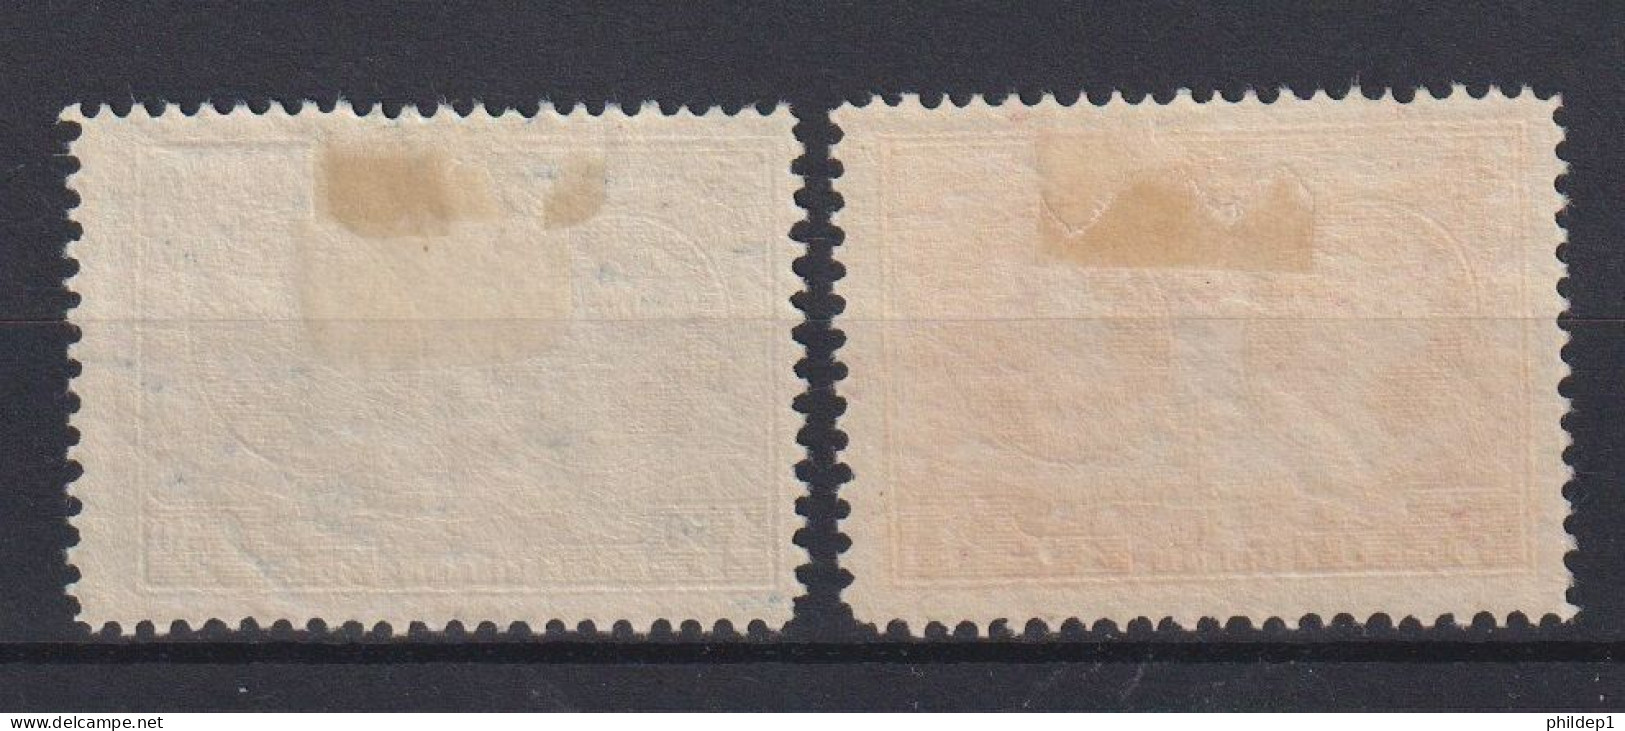 Belgique: COB N° 243/44 *, MH, Neuf(s).  TTB !!! - Unused Stamps